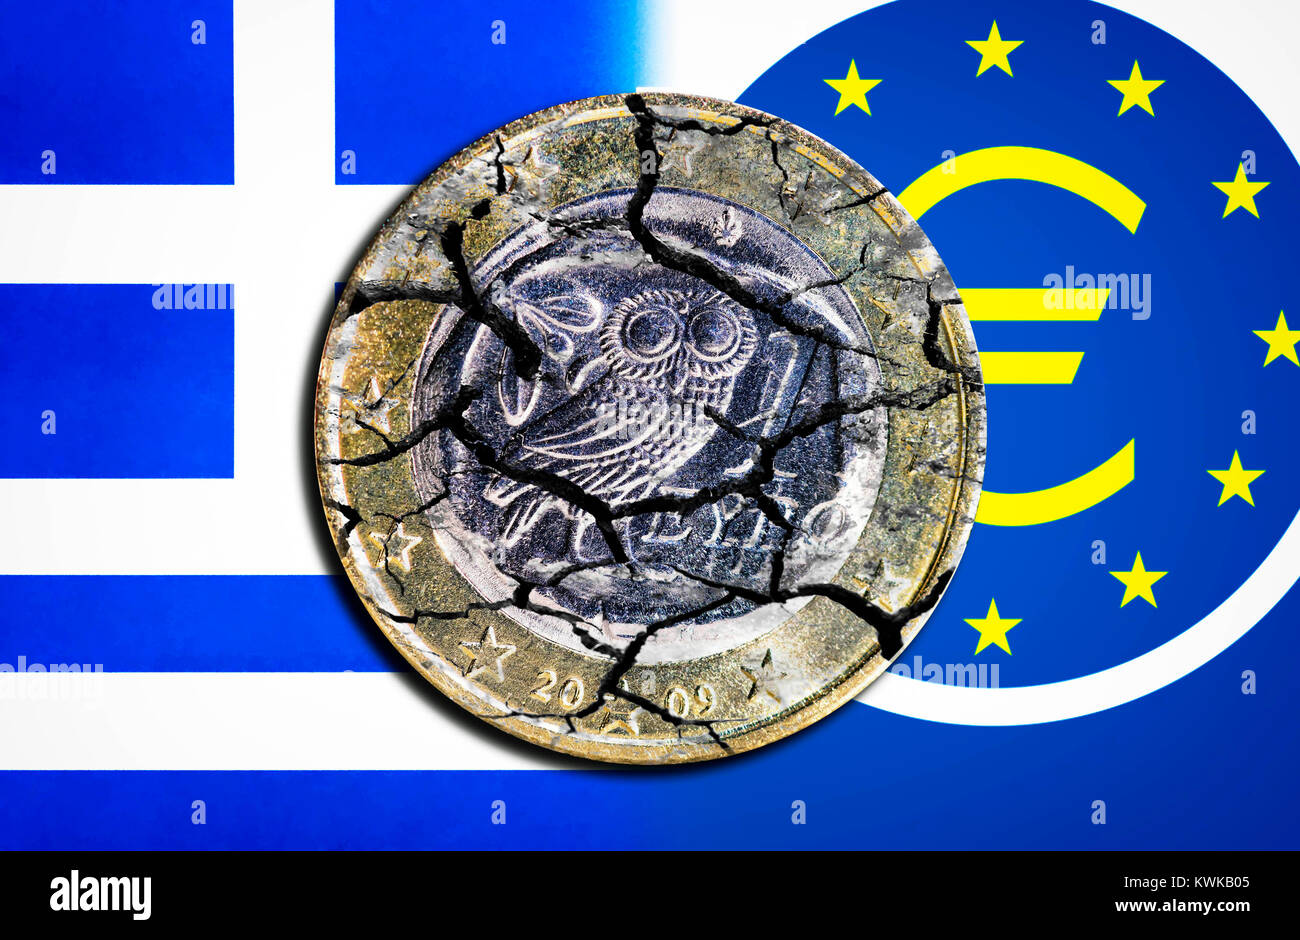 Moneda Euro circulada griego con lágrimas ante Grecia y EZB bandera, foto simbólico préstamos de emergencia para Grecia, Griechische Eurom?nze mit Rissen vor Griechenland- ONU Foto de stock